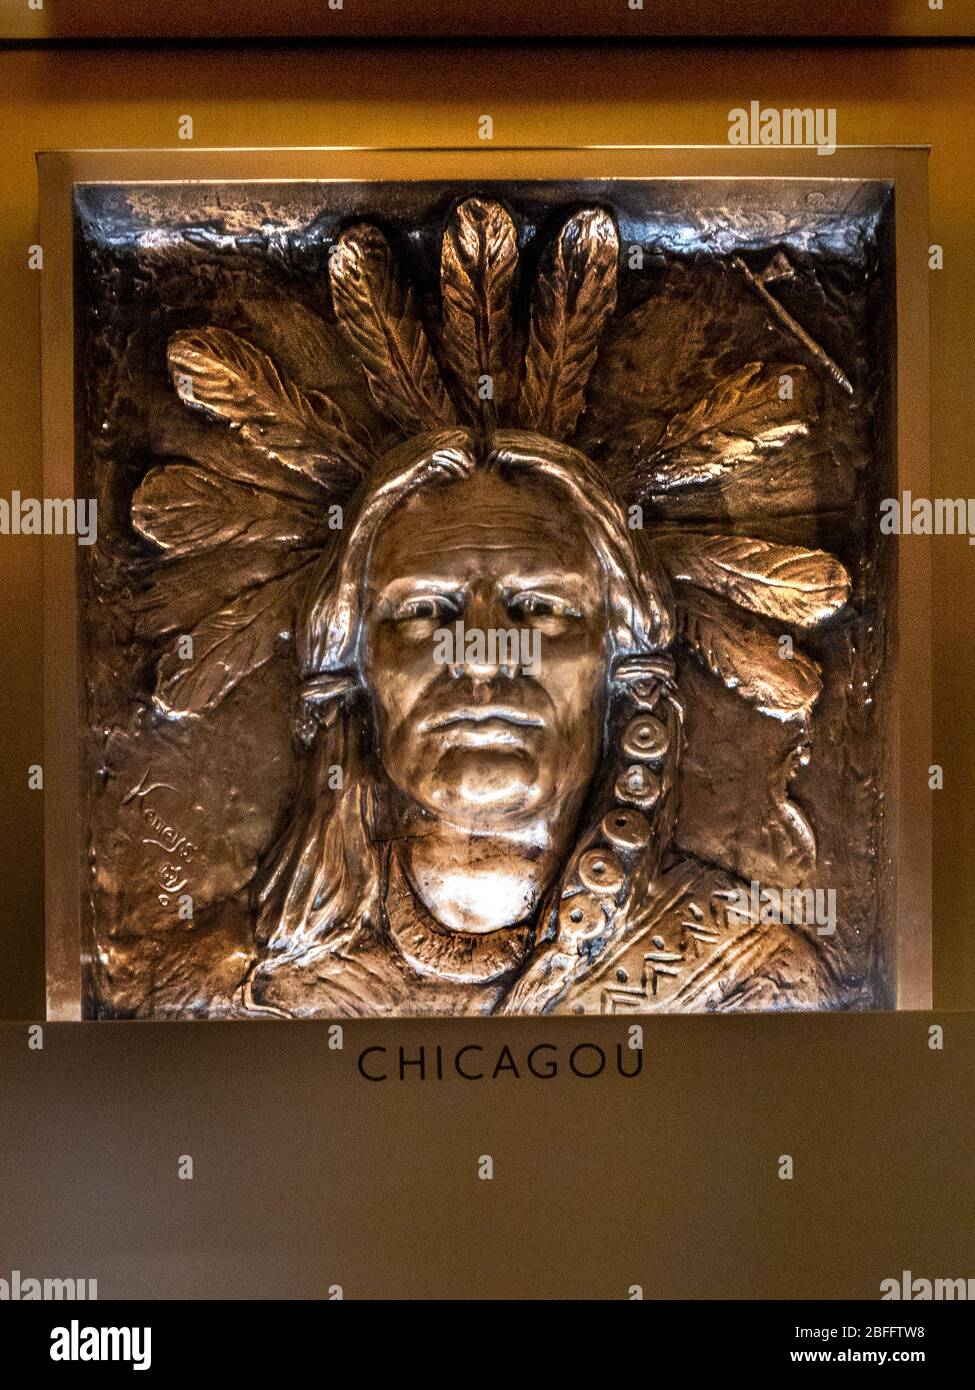 Ein Flachreliefporträt des Indianeroberhauptes Chicagou, auch bekannt als Agapit Chicagou, ziert die Lobby des Marquette Building in Chicago. Chicagou war ein Indianerführer des Mitchigamea Stammes aus dem 18. Jahrhundert. Stockfoto